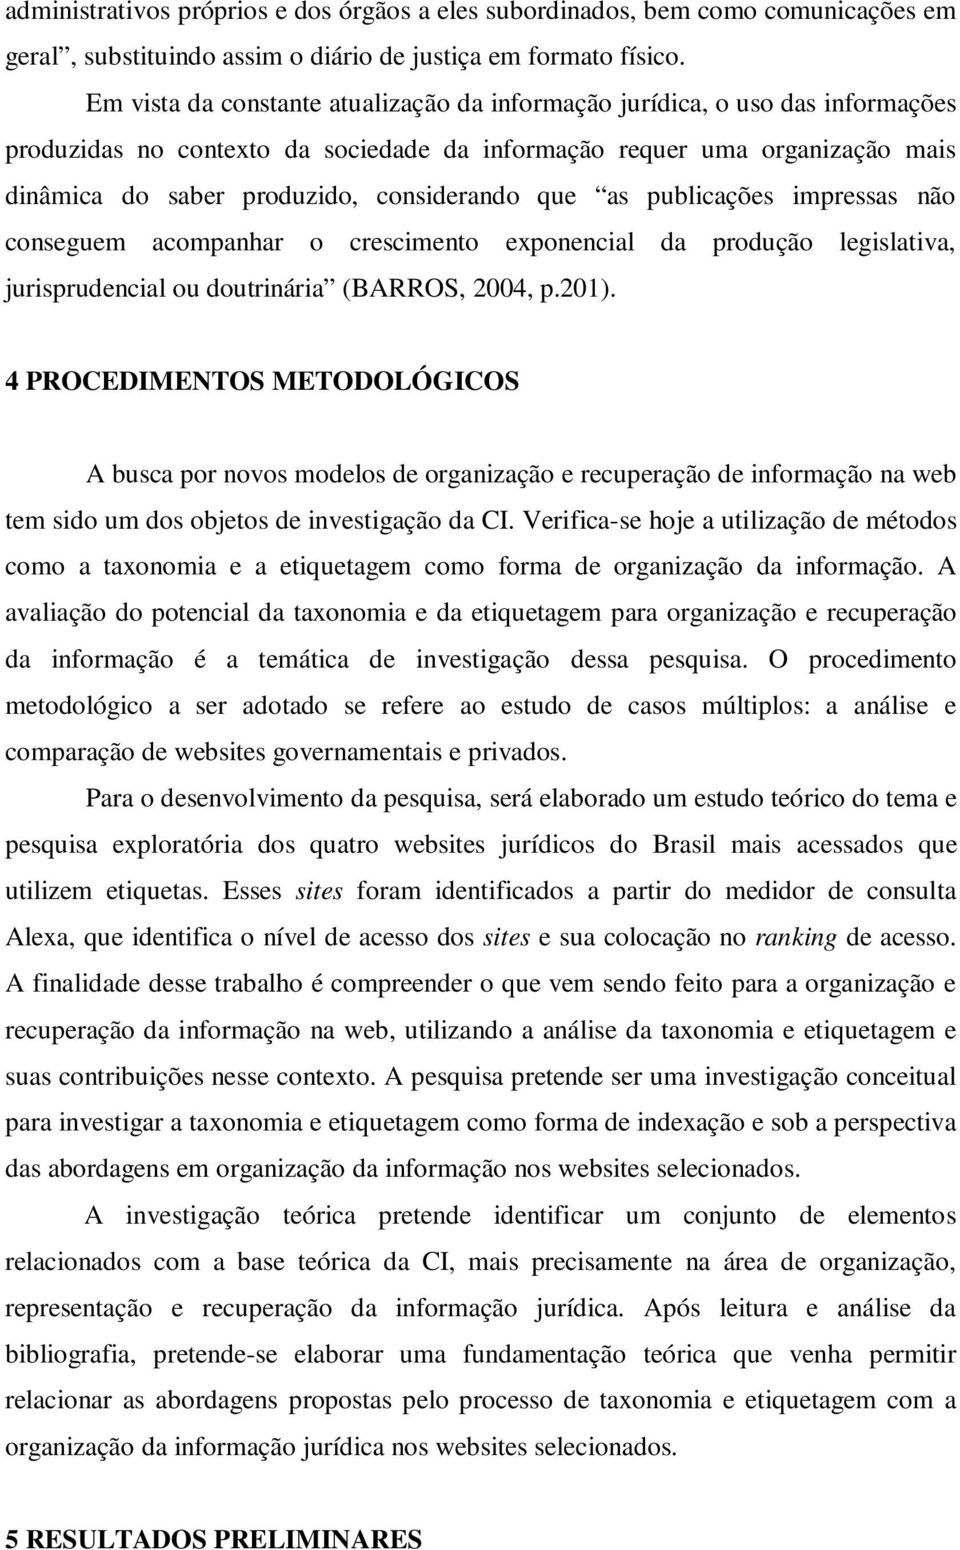 que as publicações impressas não conseguem acompanhar o crescimento exponencial da produção legislativa, jurisprudencial ou doutrinária (BARROS, 2004, p.201).